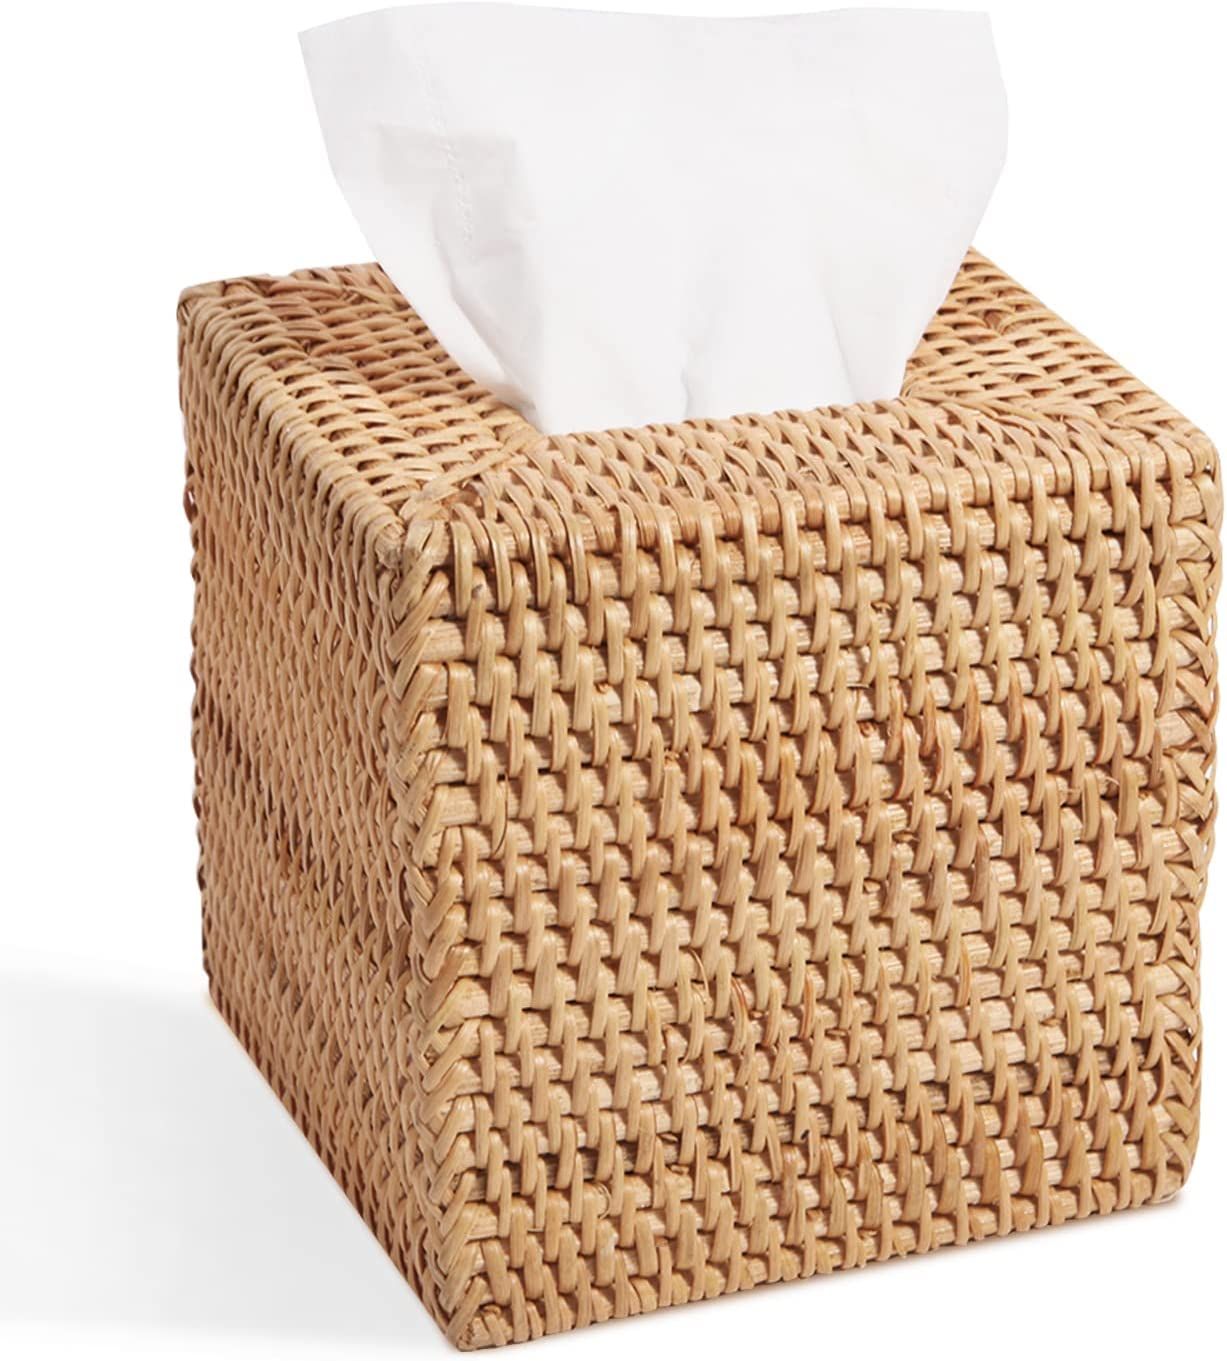 Livelab Rattan Tissue Box Cover, Square Hand Woven Natural Wicker Tissue Box Holder, Decorative F... | Amazon (US)